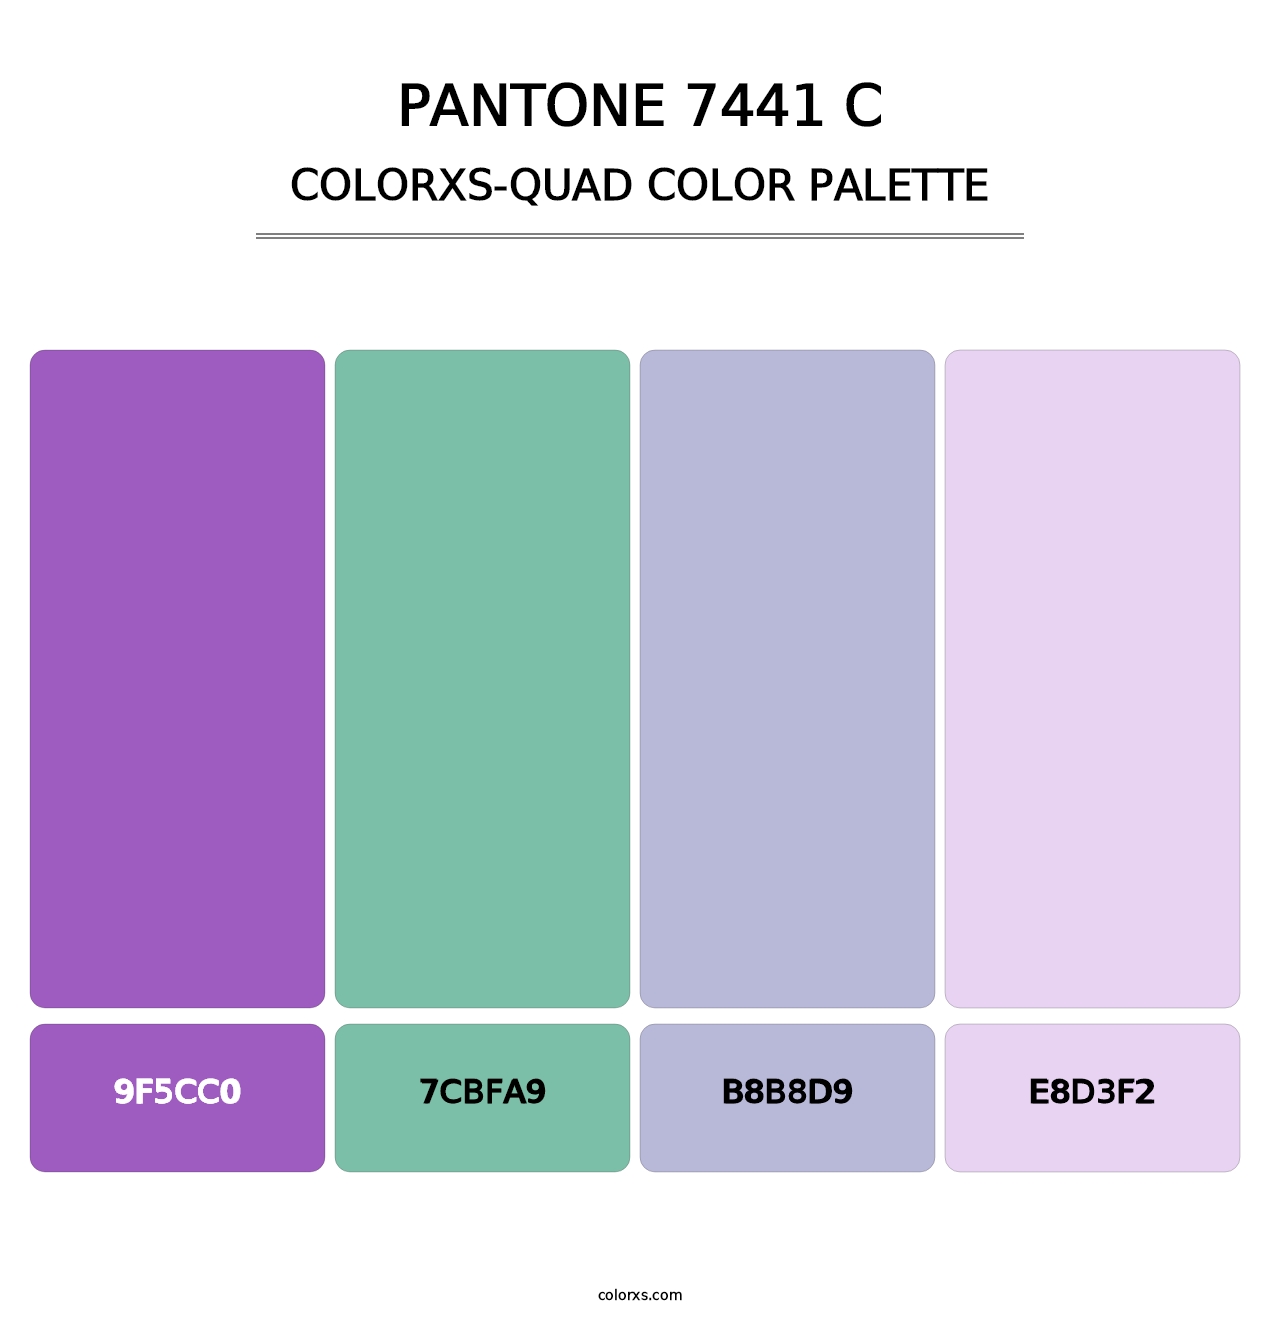 PANTONE 7441 C - Colorxs Quad Palette